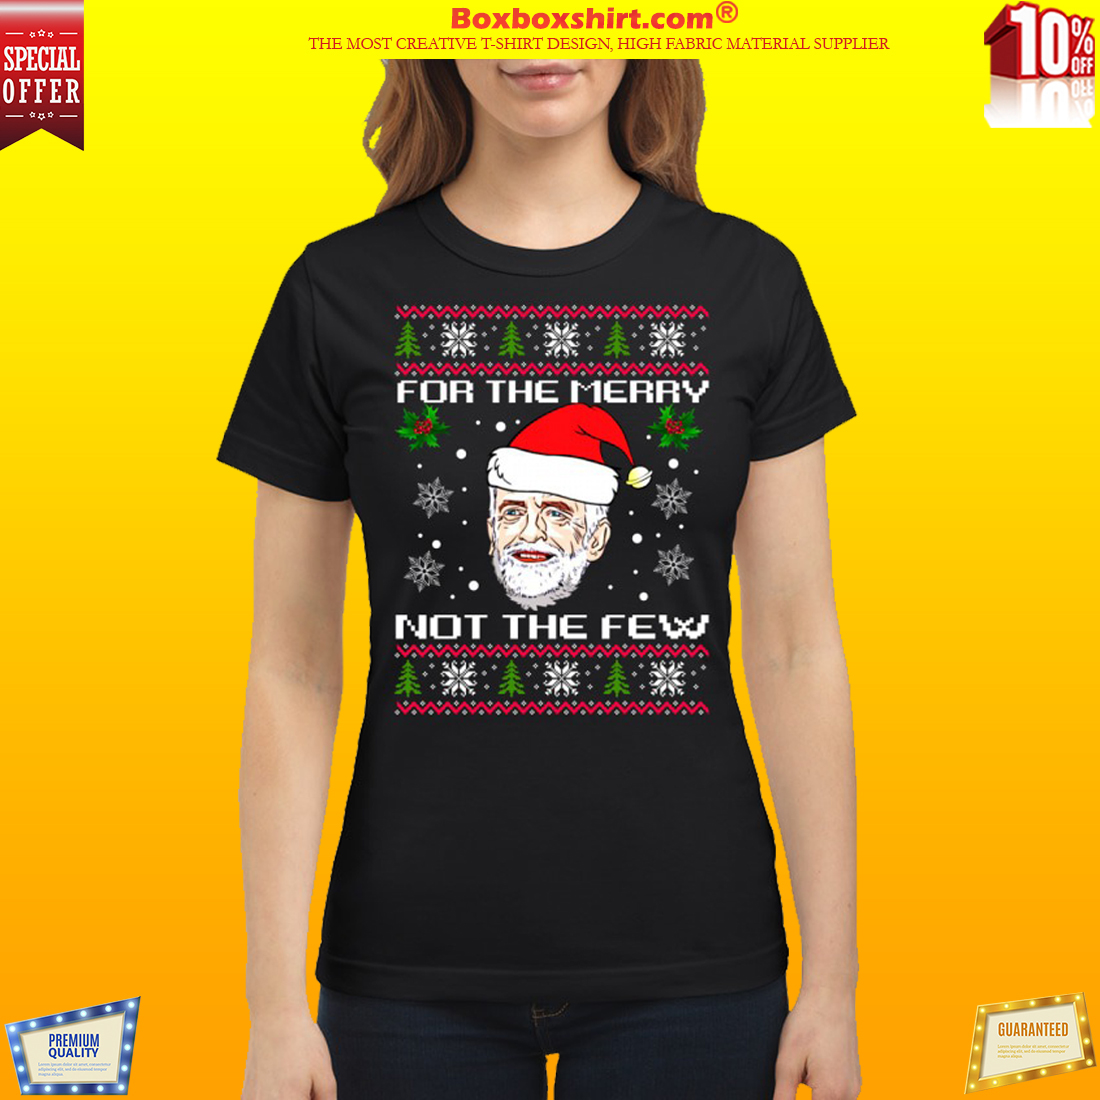 Jeremy Corbyn for the merry not the few sweatshirt 